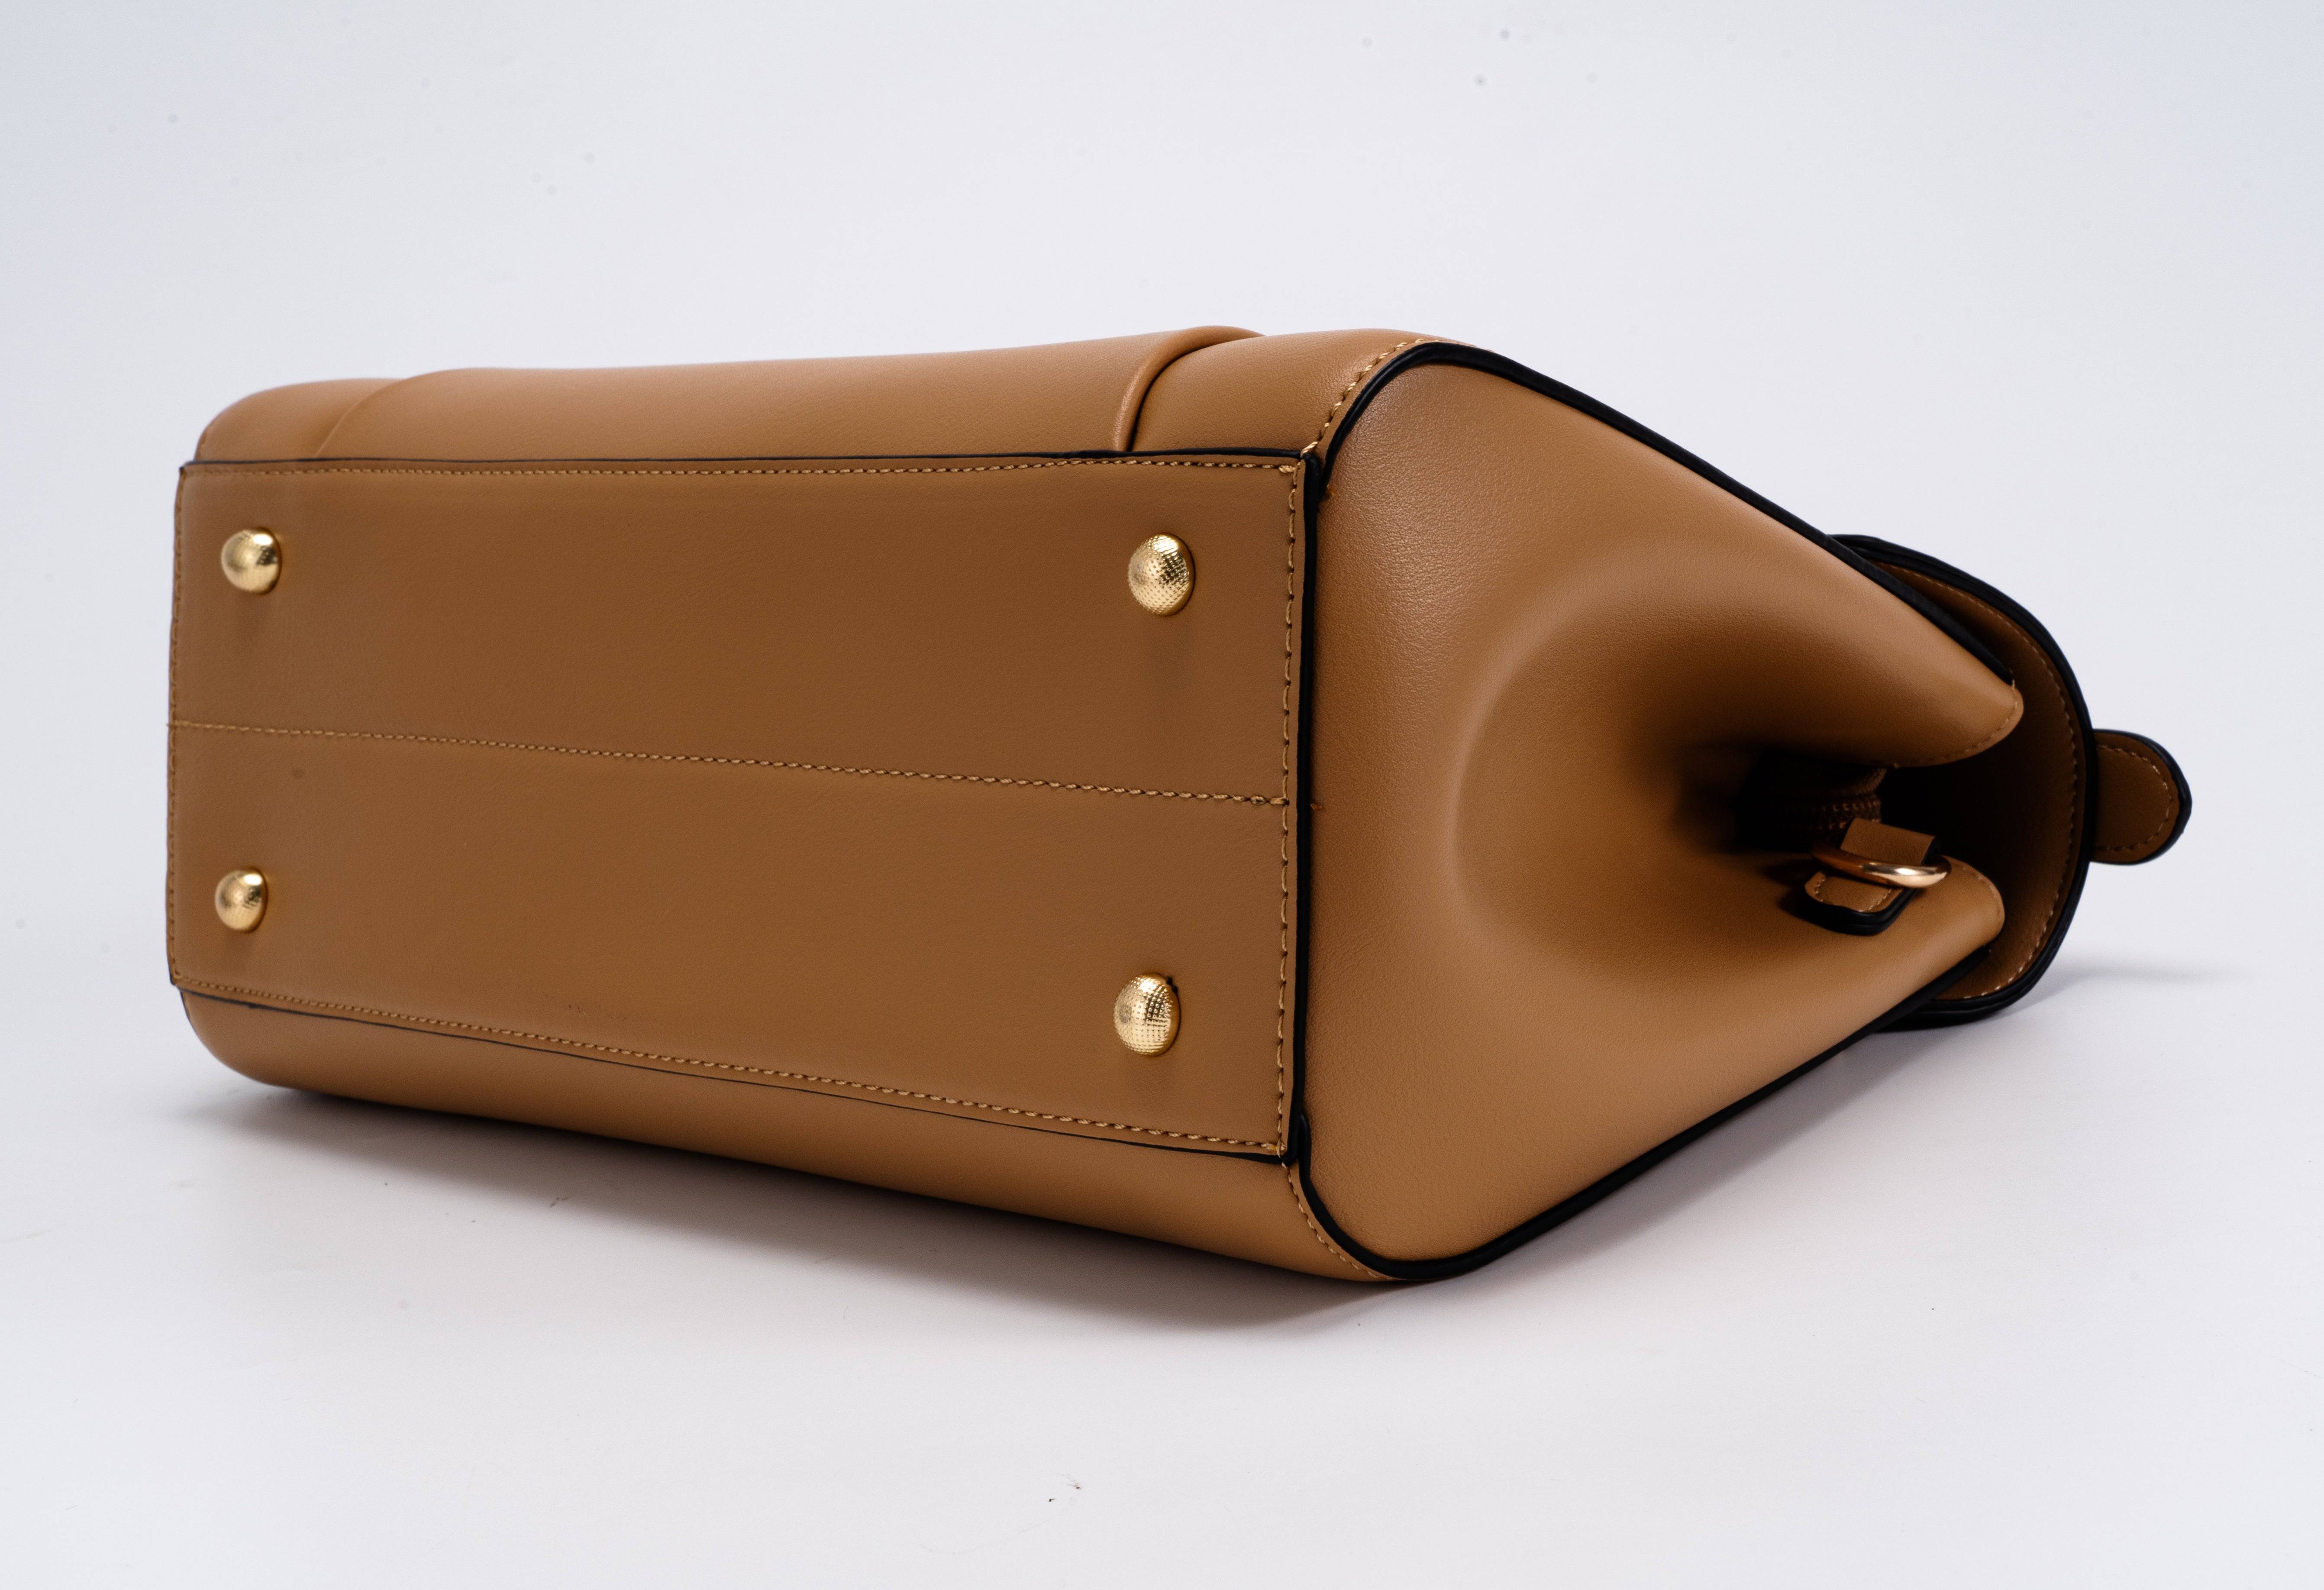 حقيبة يد نسائية باللون البنى بتصميم مختلف يجمع بين درجاتين لنفس اللون. - KSA